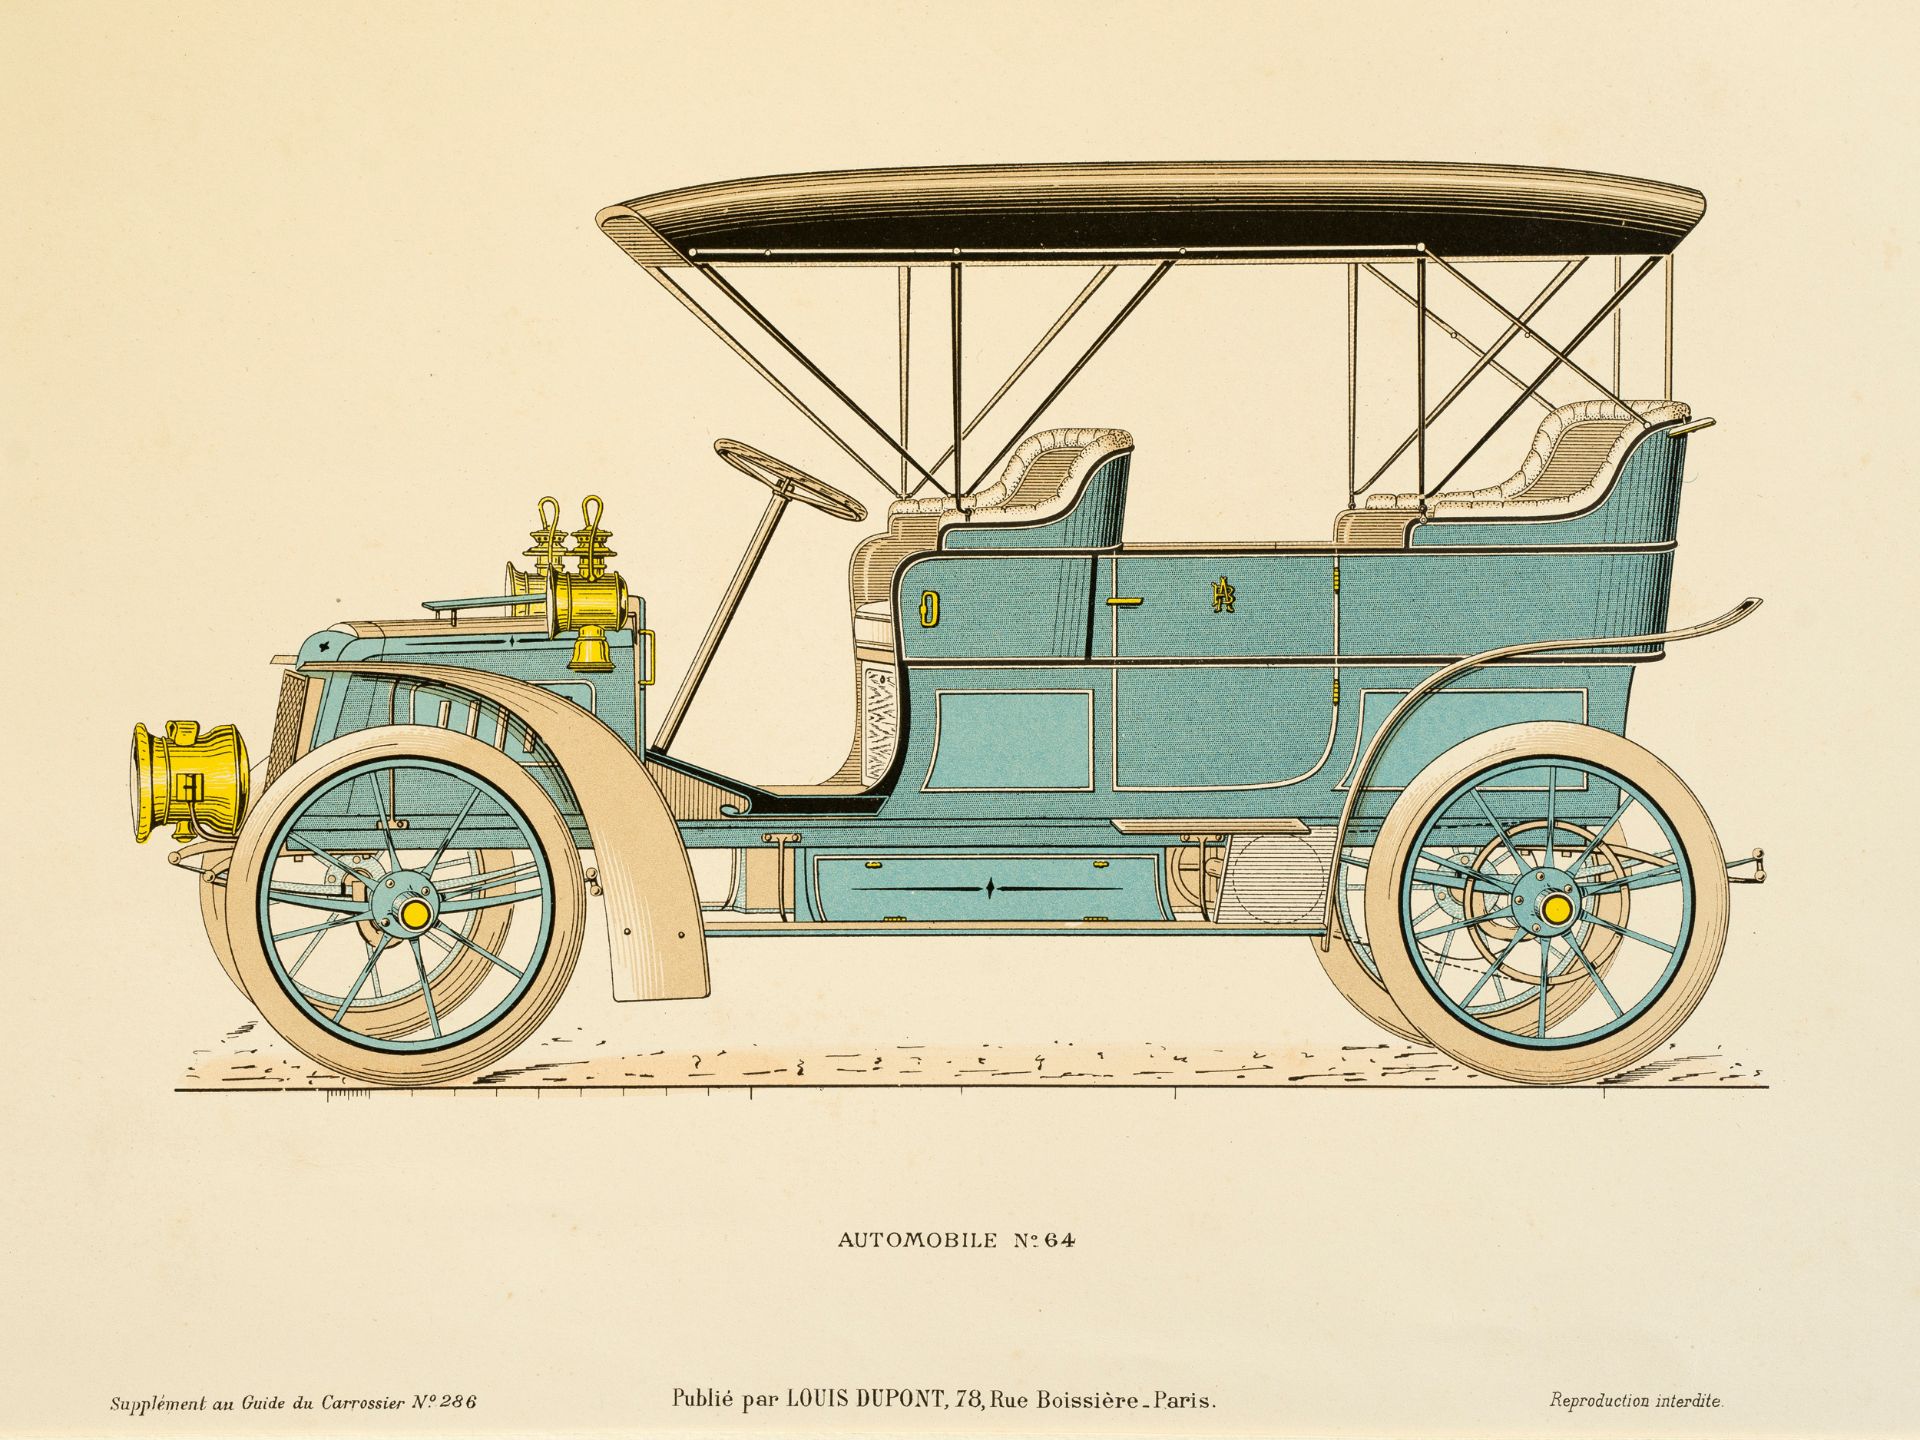 "Automobile No. 64", From "Guide du carrossier”, Paris